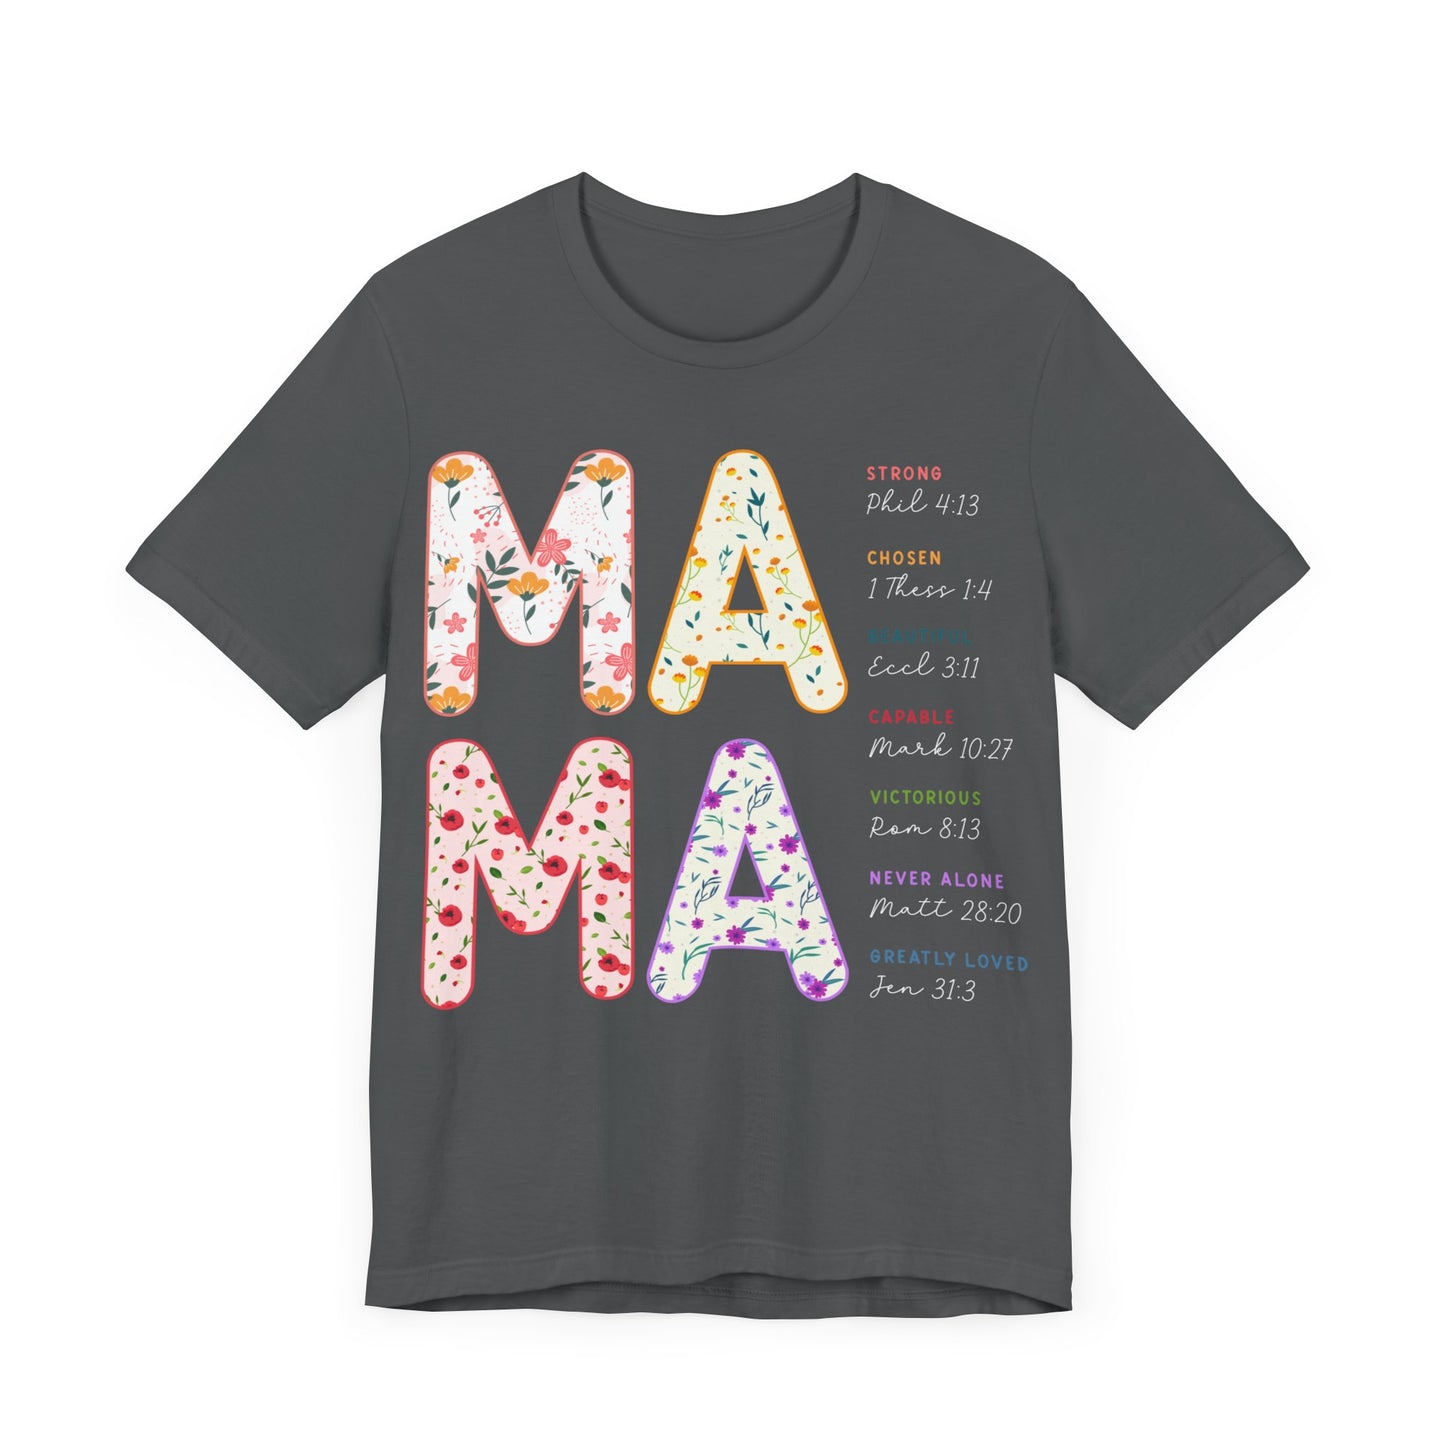 Happy Mother's Day Gift, Nana Shirt, Mom Shirt, Funny Mom Tshirt, Mama Shirt, Mom Club Shirt